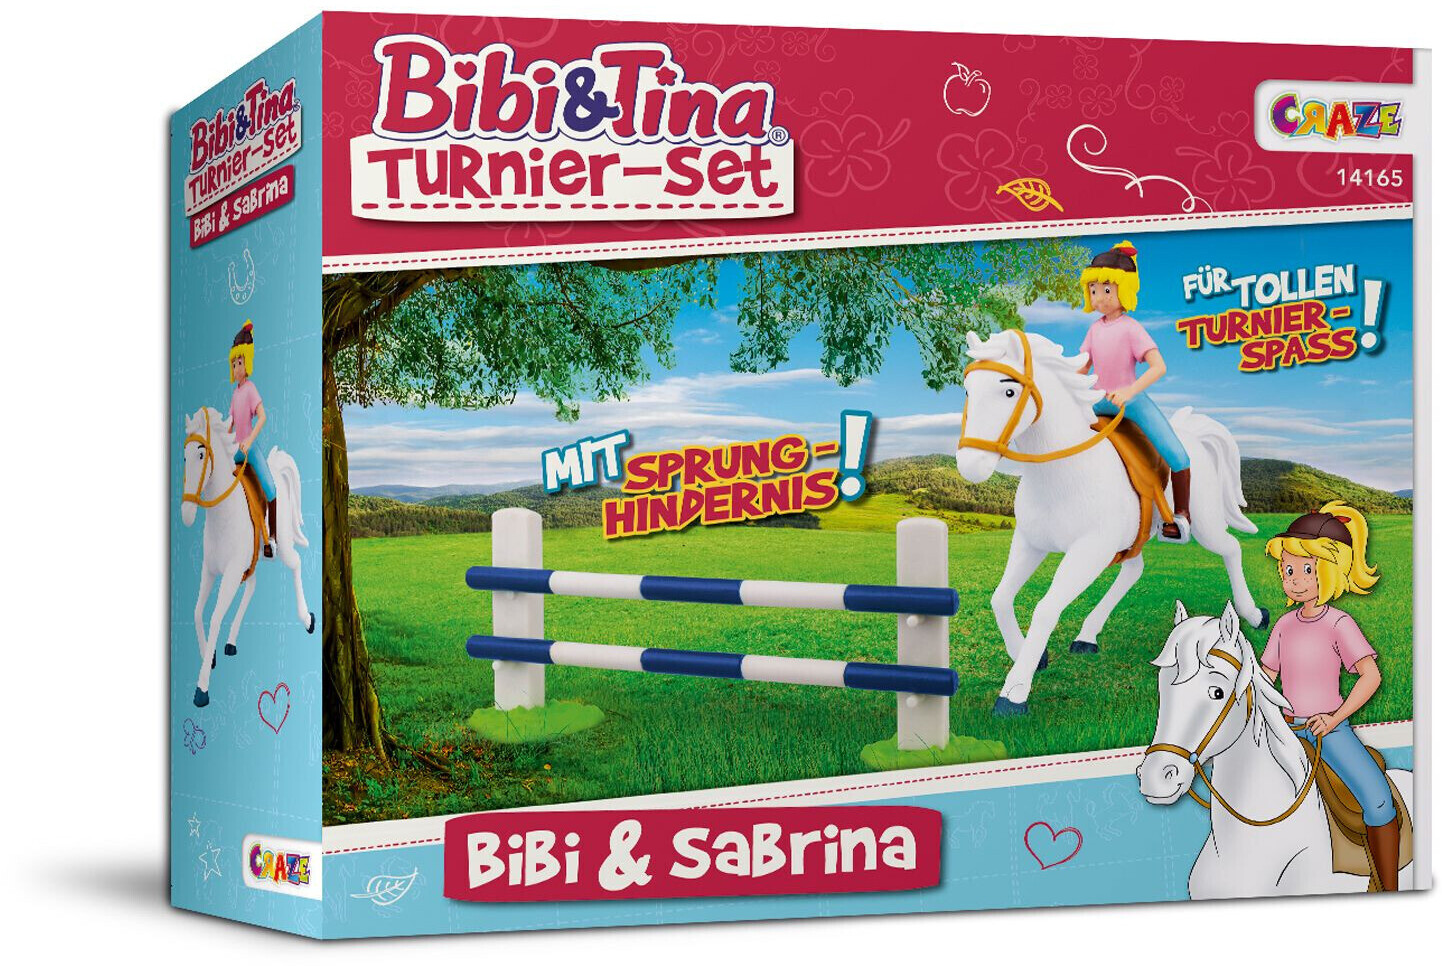 Tina und und ab € Bibi Turnierset Sabrina bei Craze - Bibi 16,99 Preisvergleich (14165) |